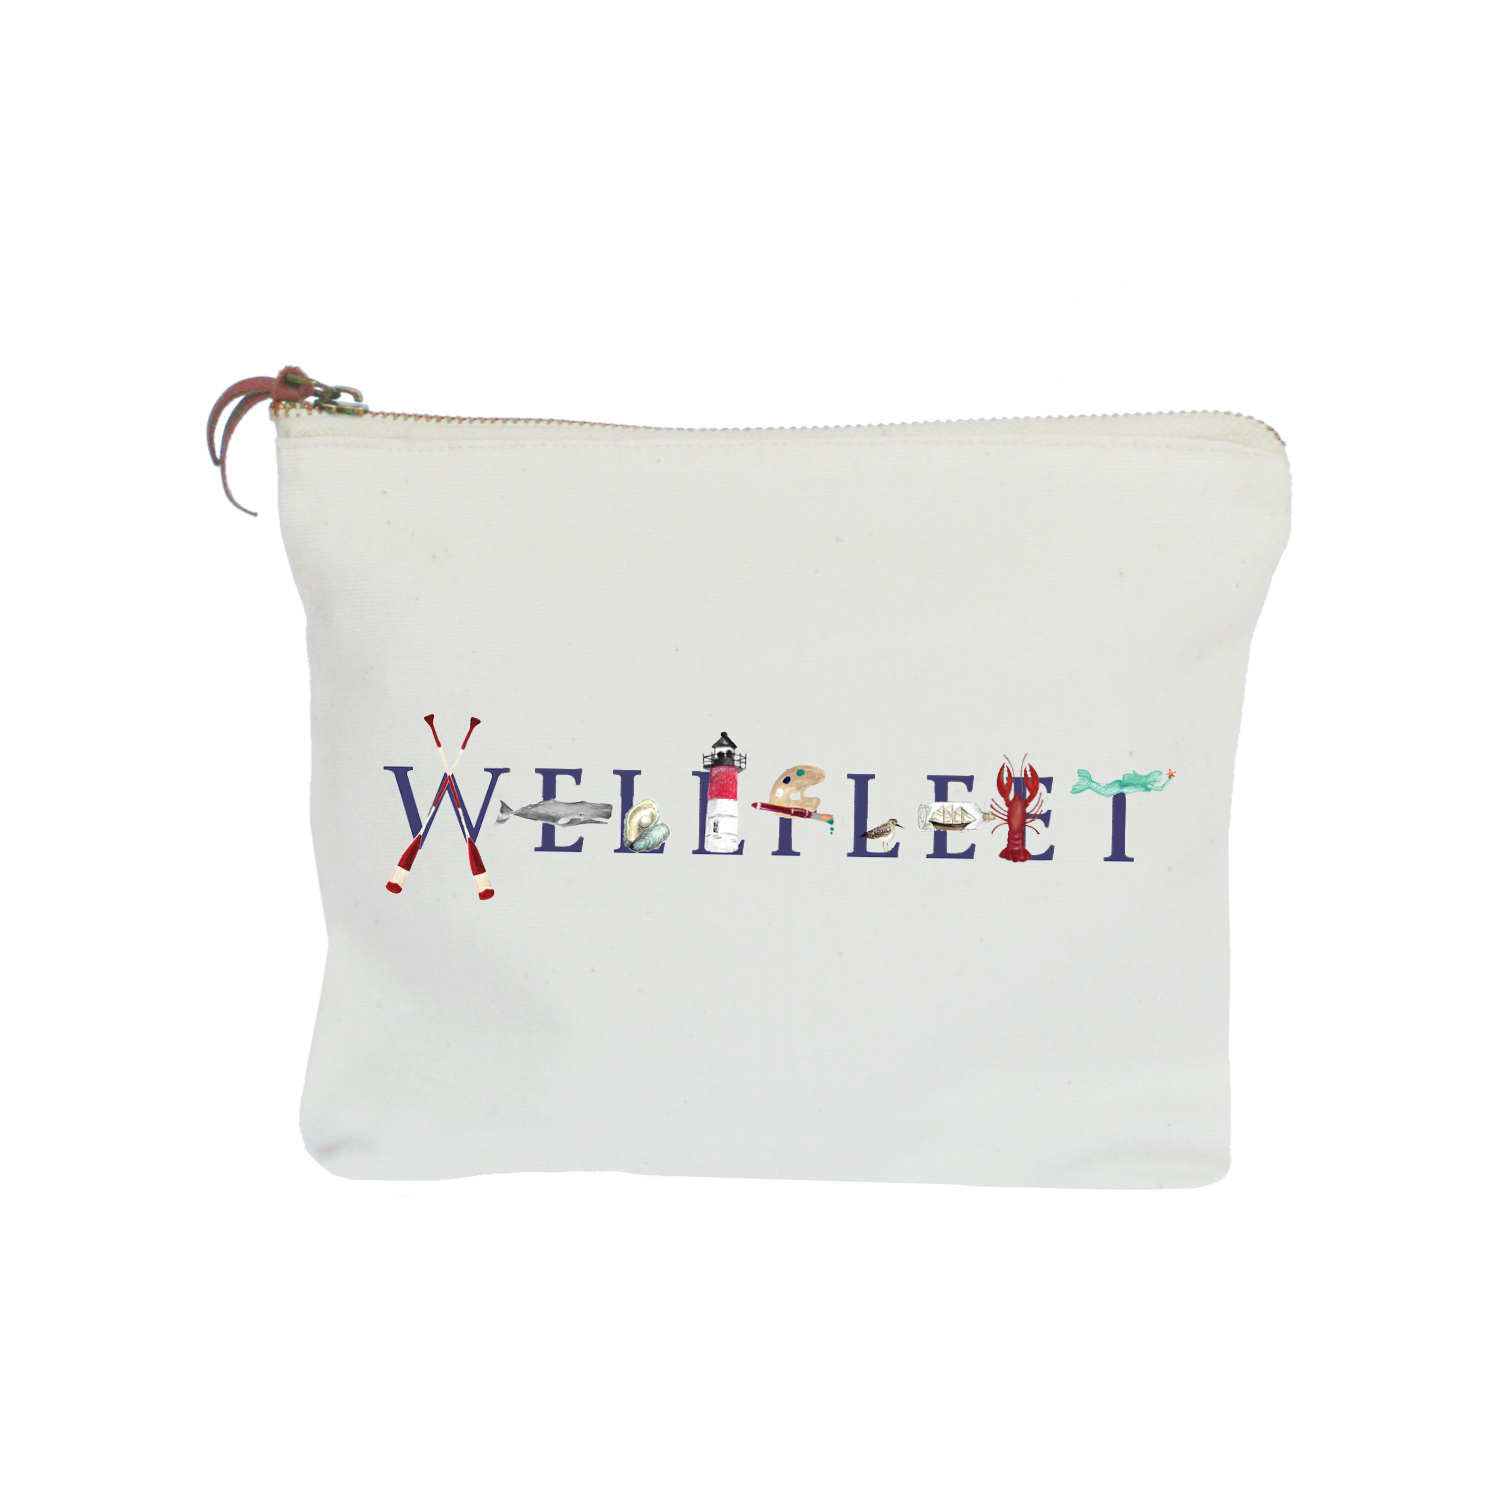 Wellfleet zipper pouch